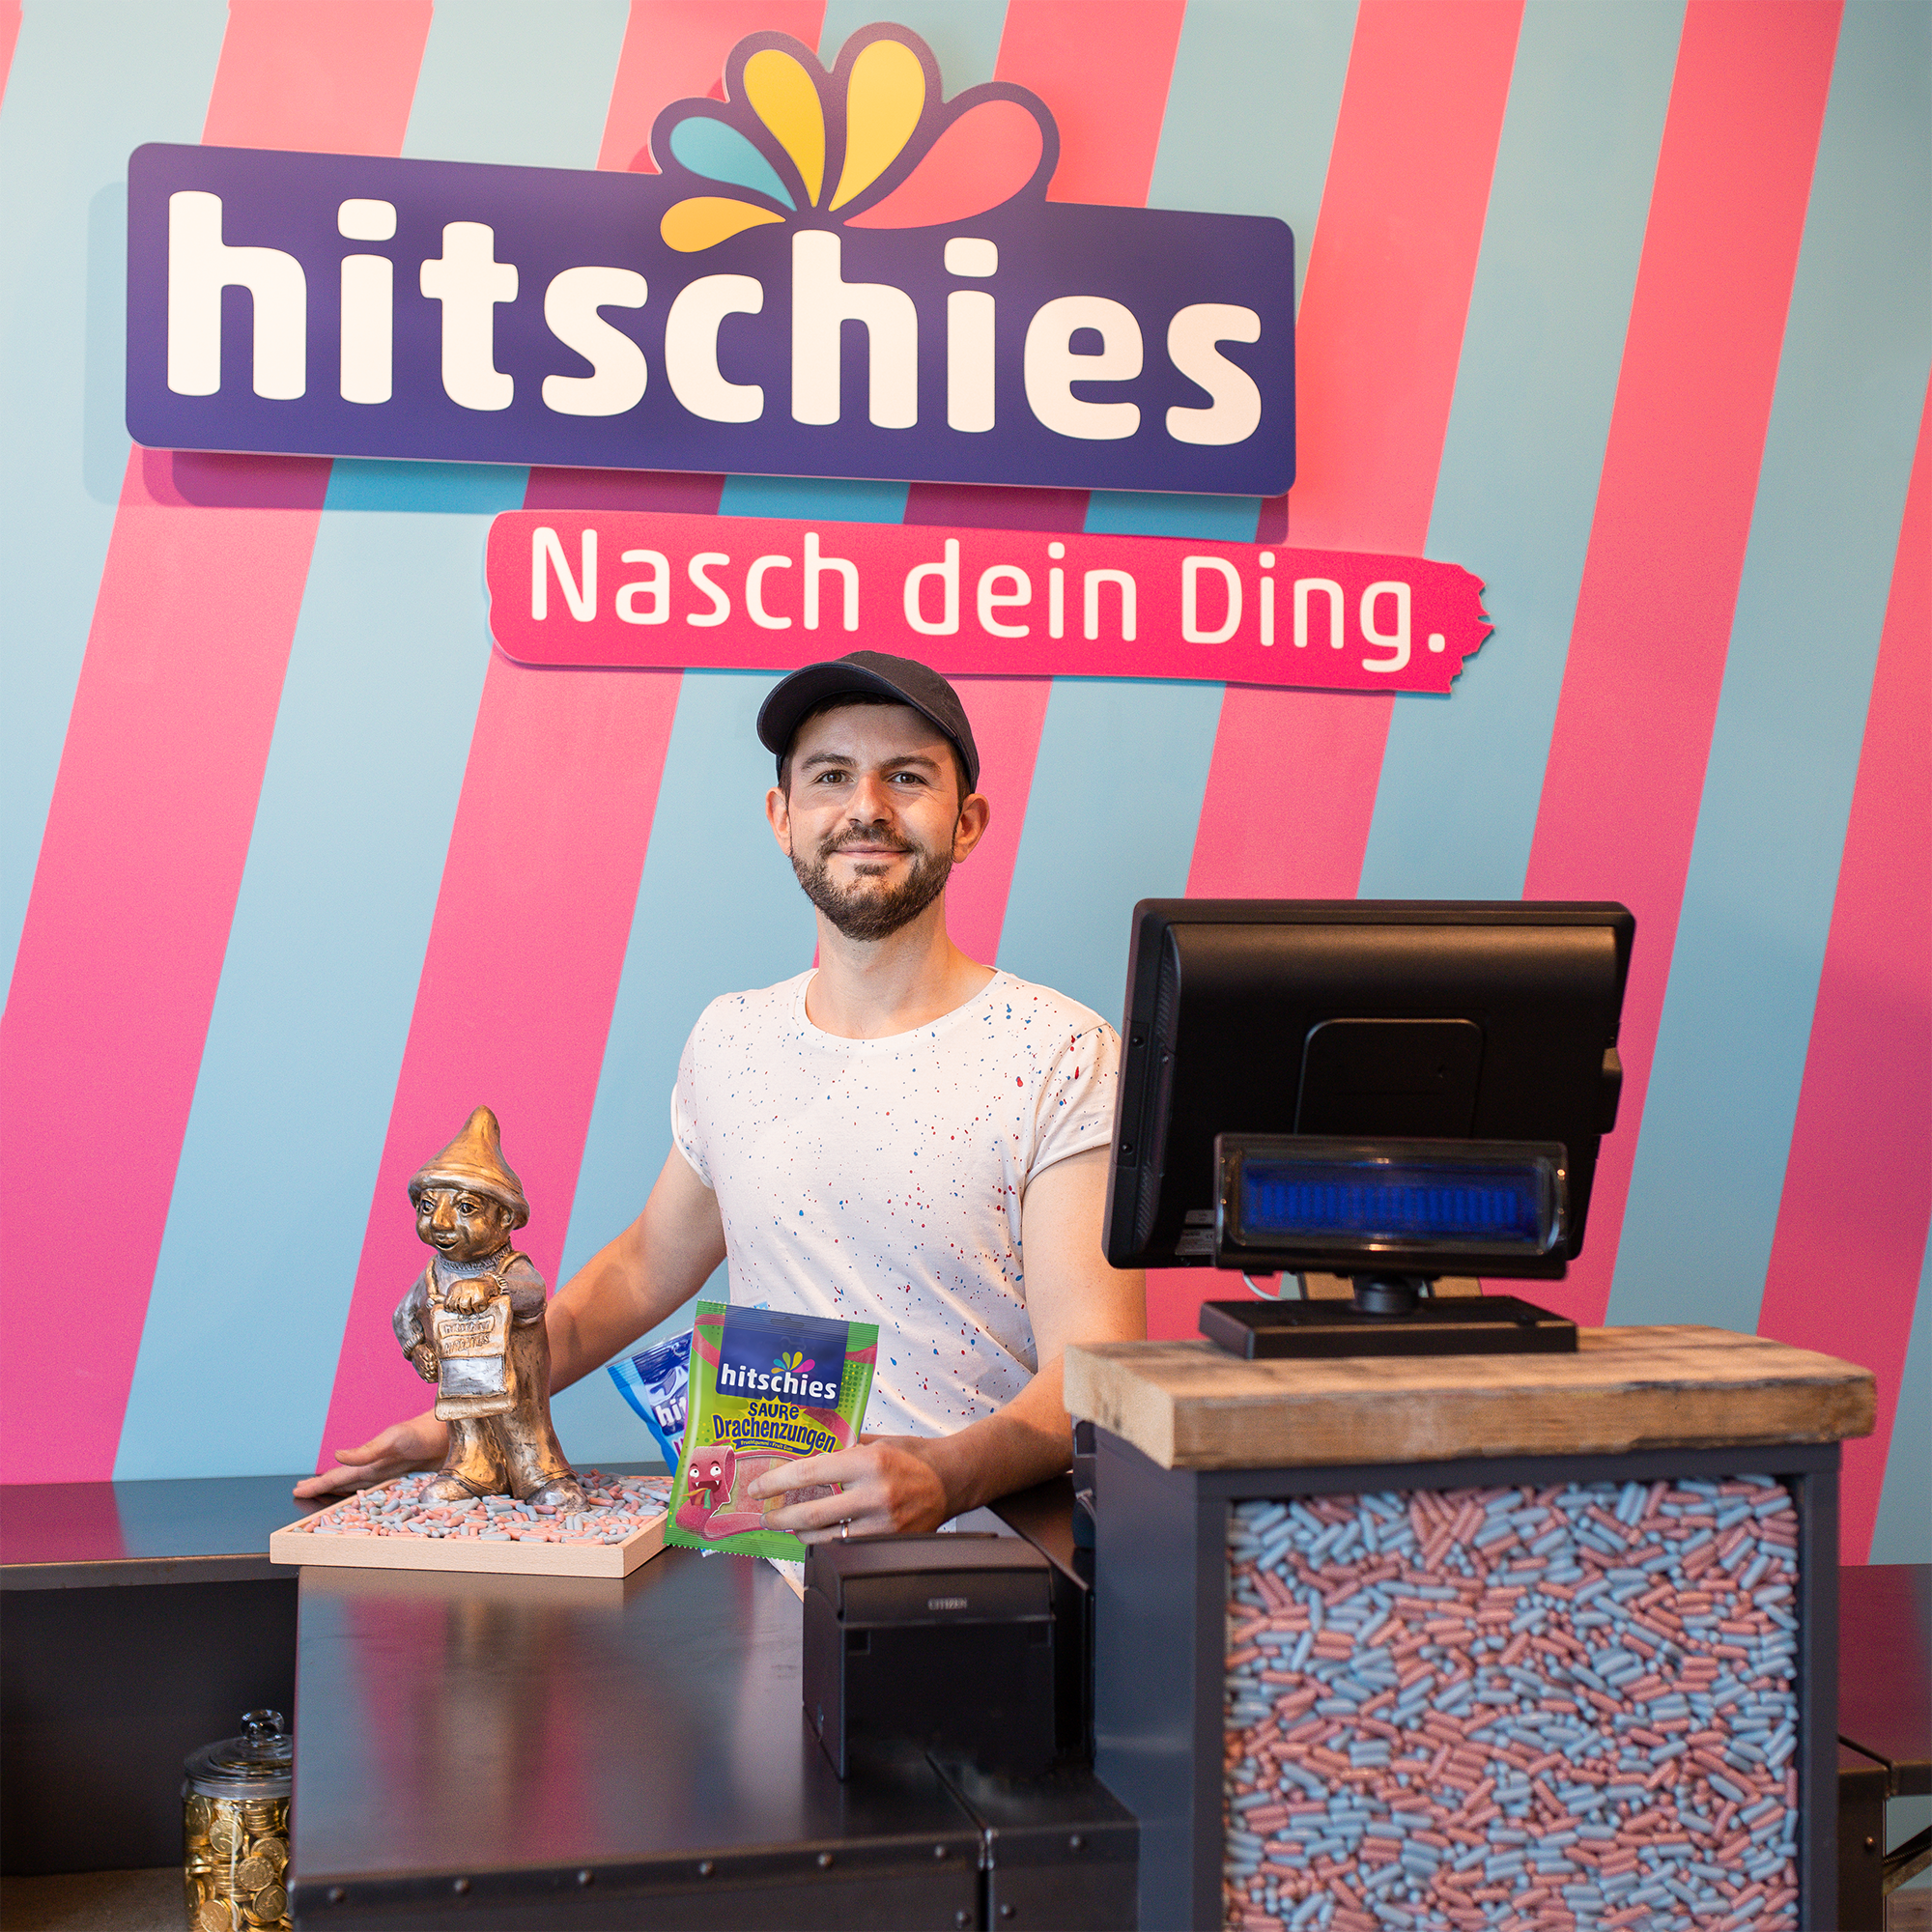 hitschies hitschler Werksverkauf in Hürth bei Köln mit Mitarbeiter hinter der Kasse 